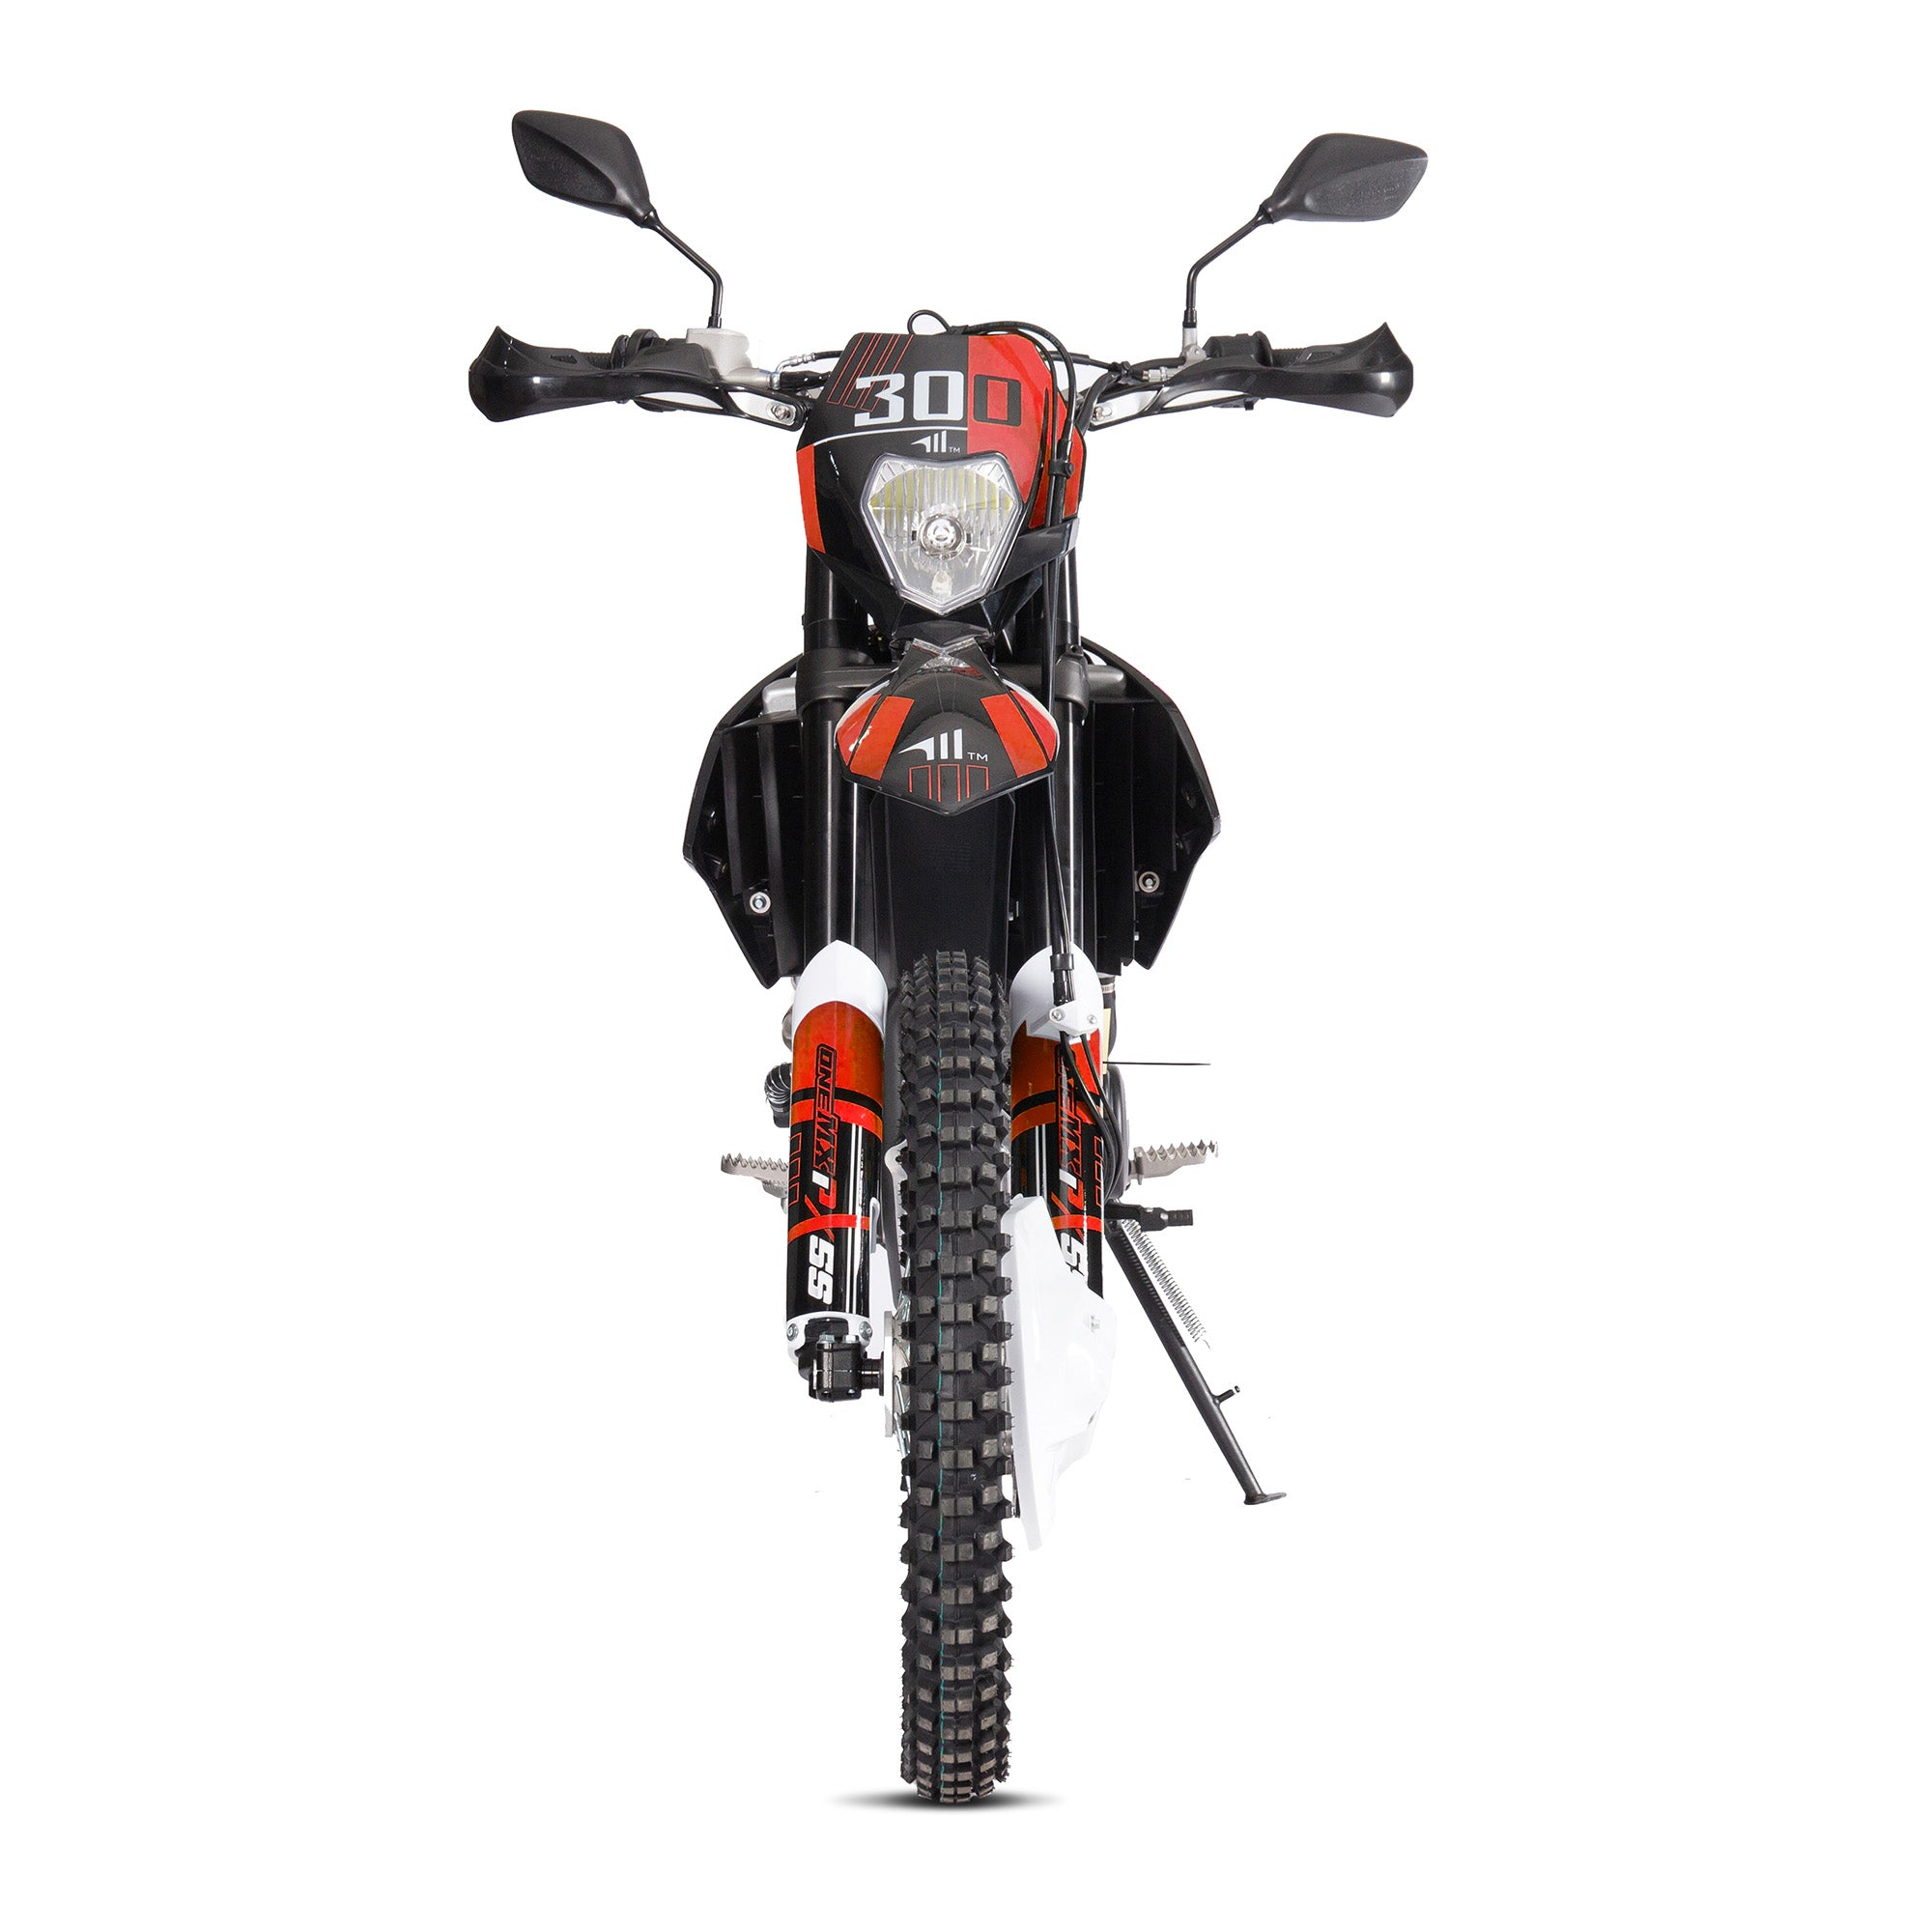 OneMX PX5S 300CC Petrol Motorbike